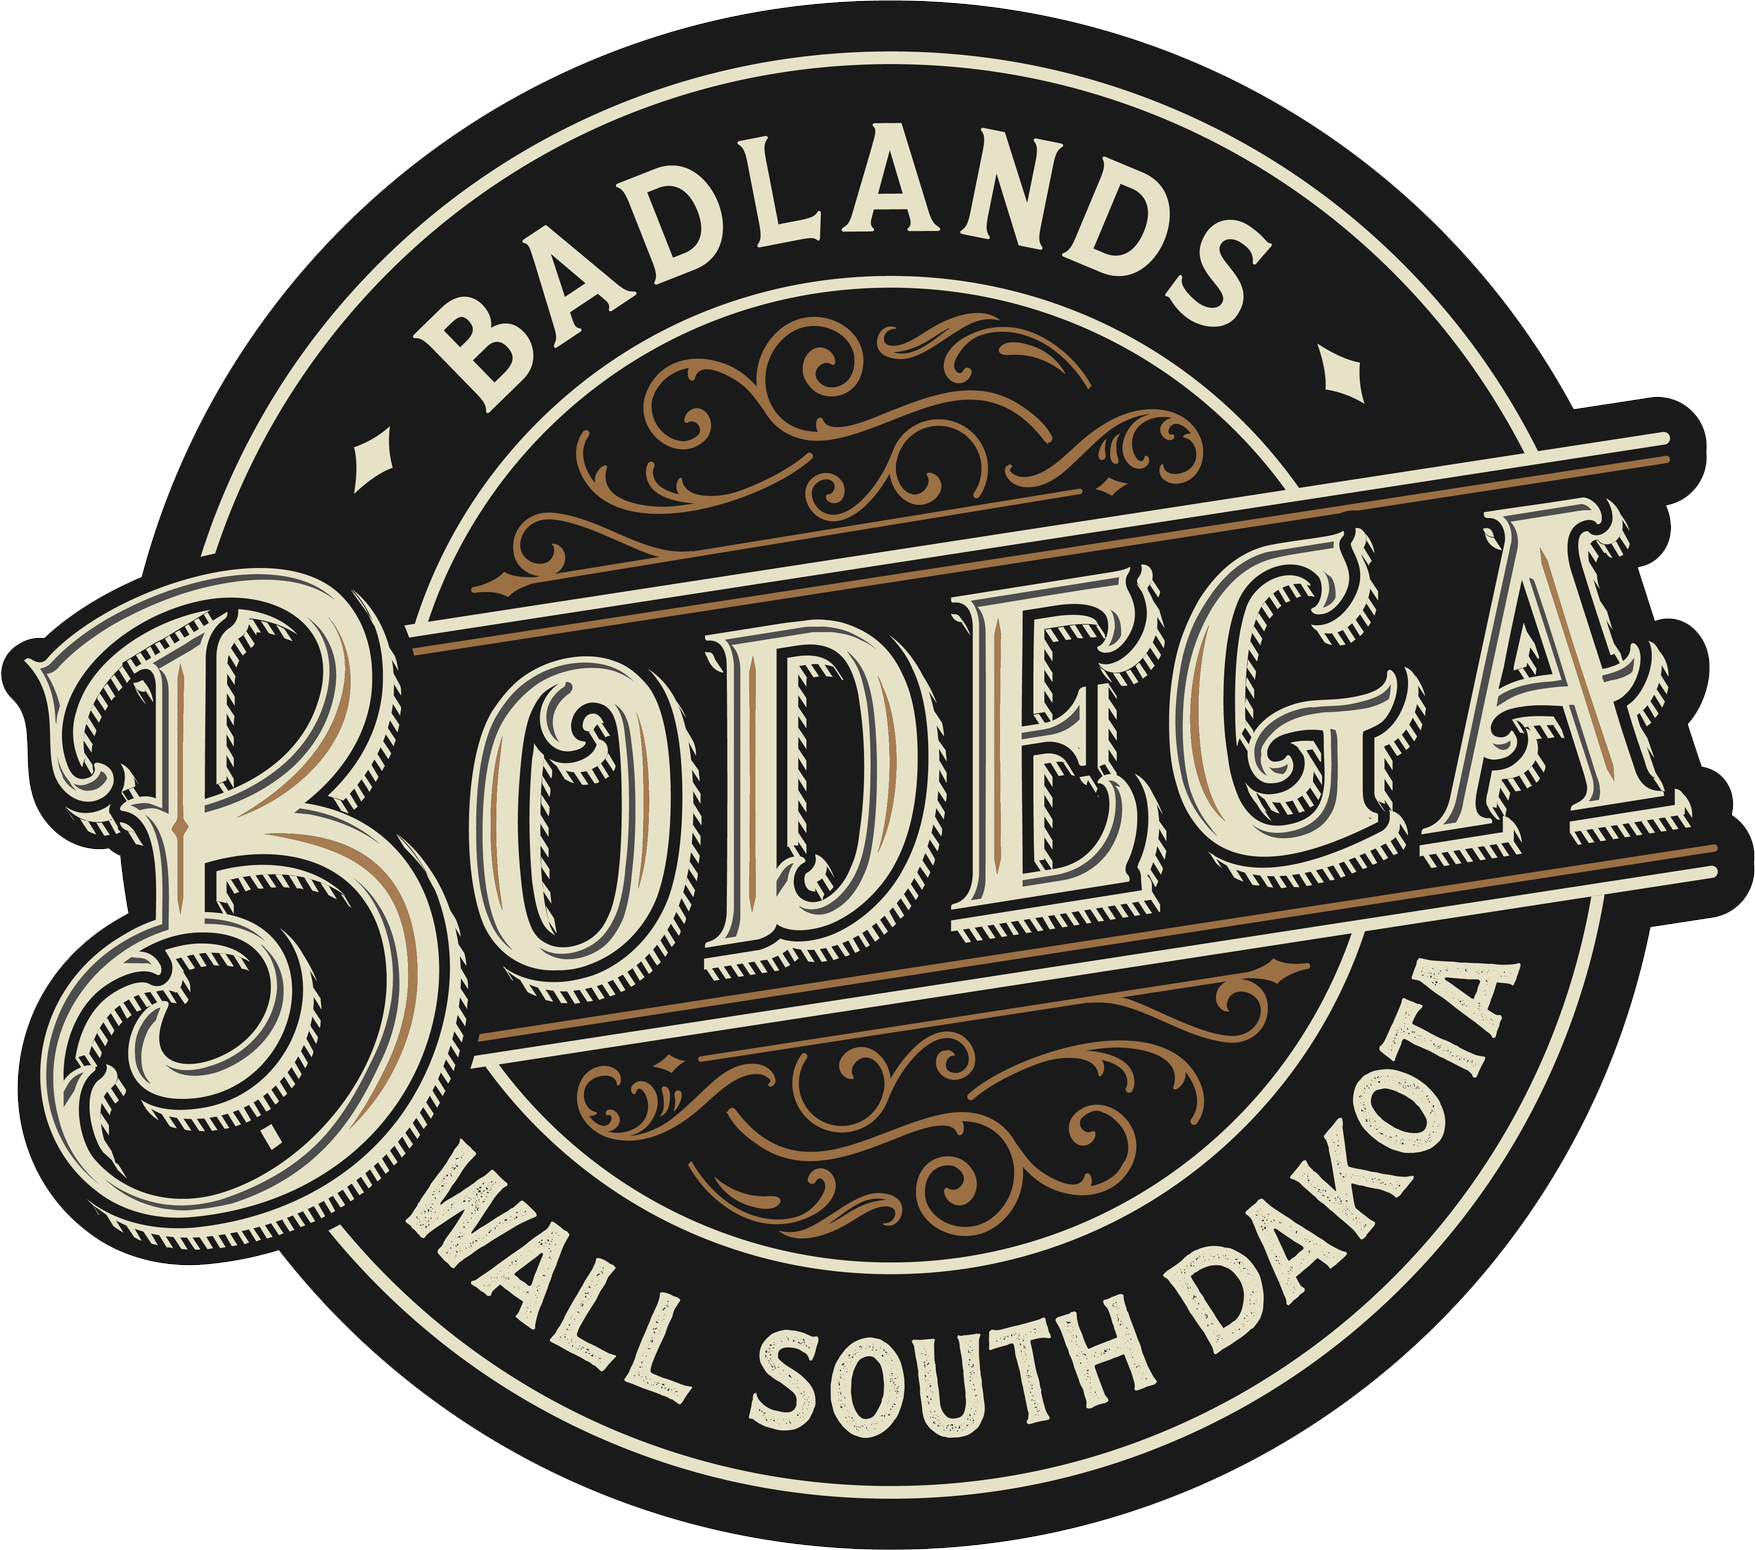 Badlands Bodega